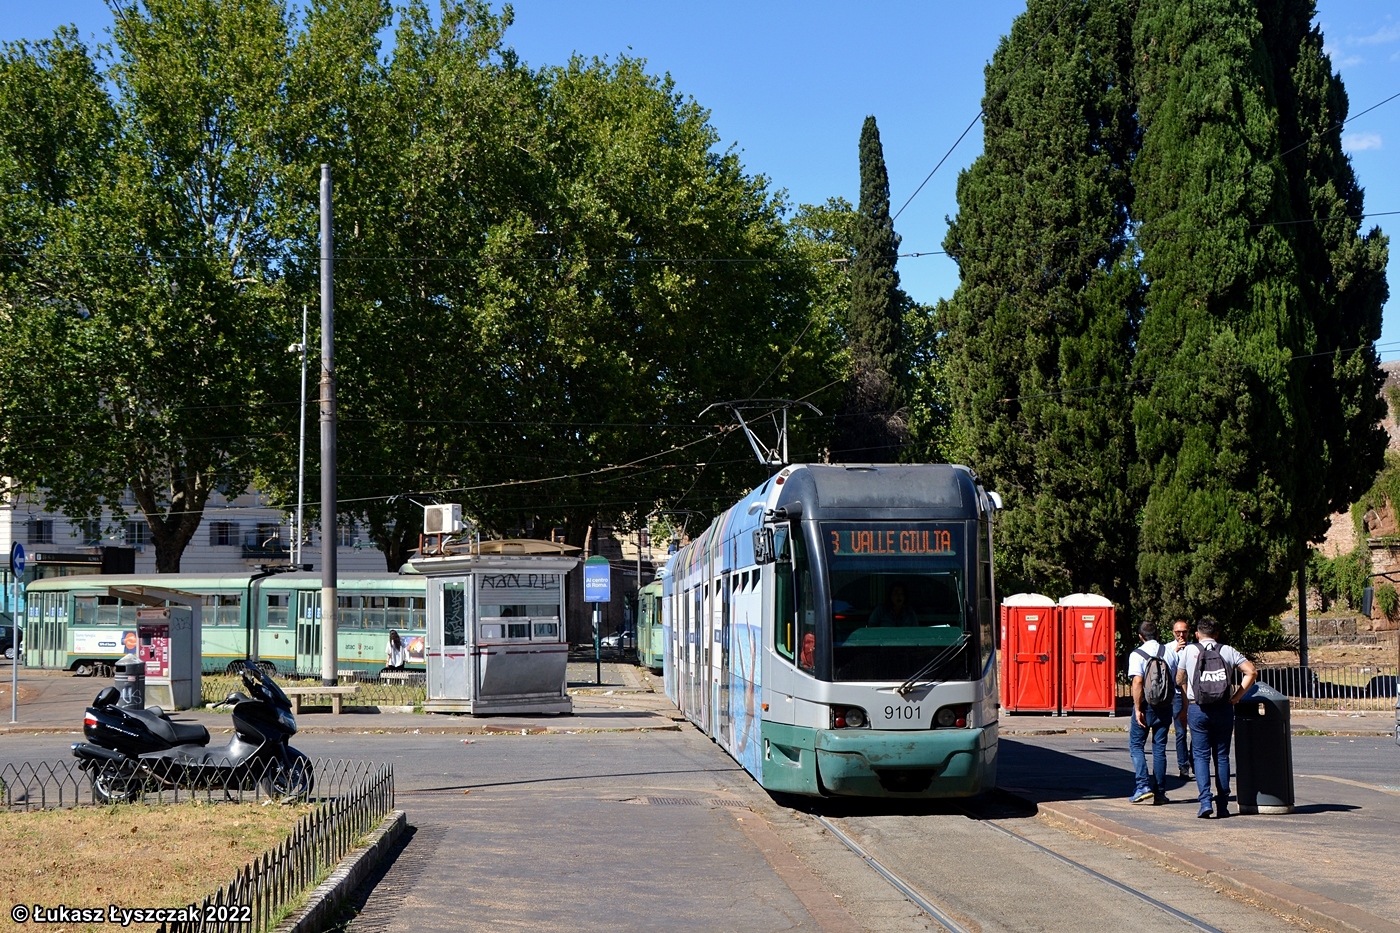 FIAT Ferroviaria Cityway Roma I #9101